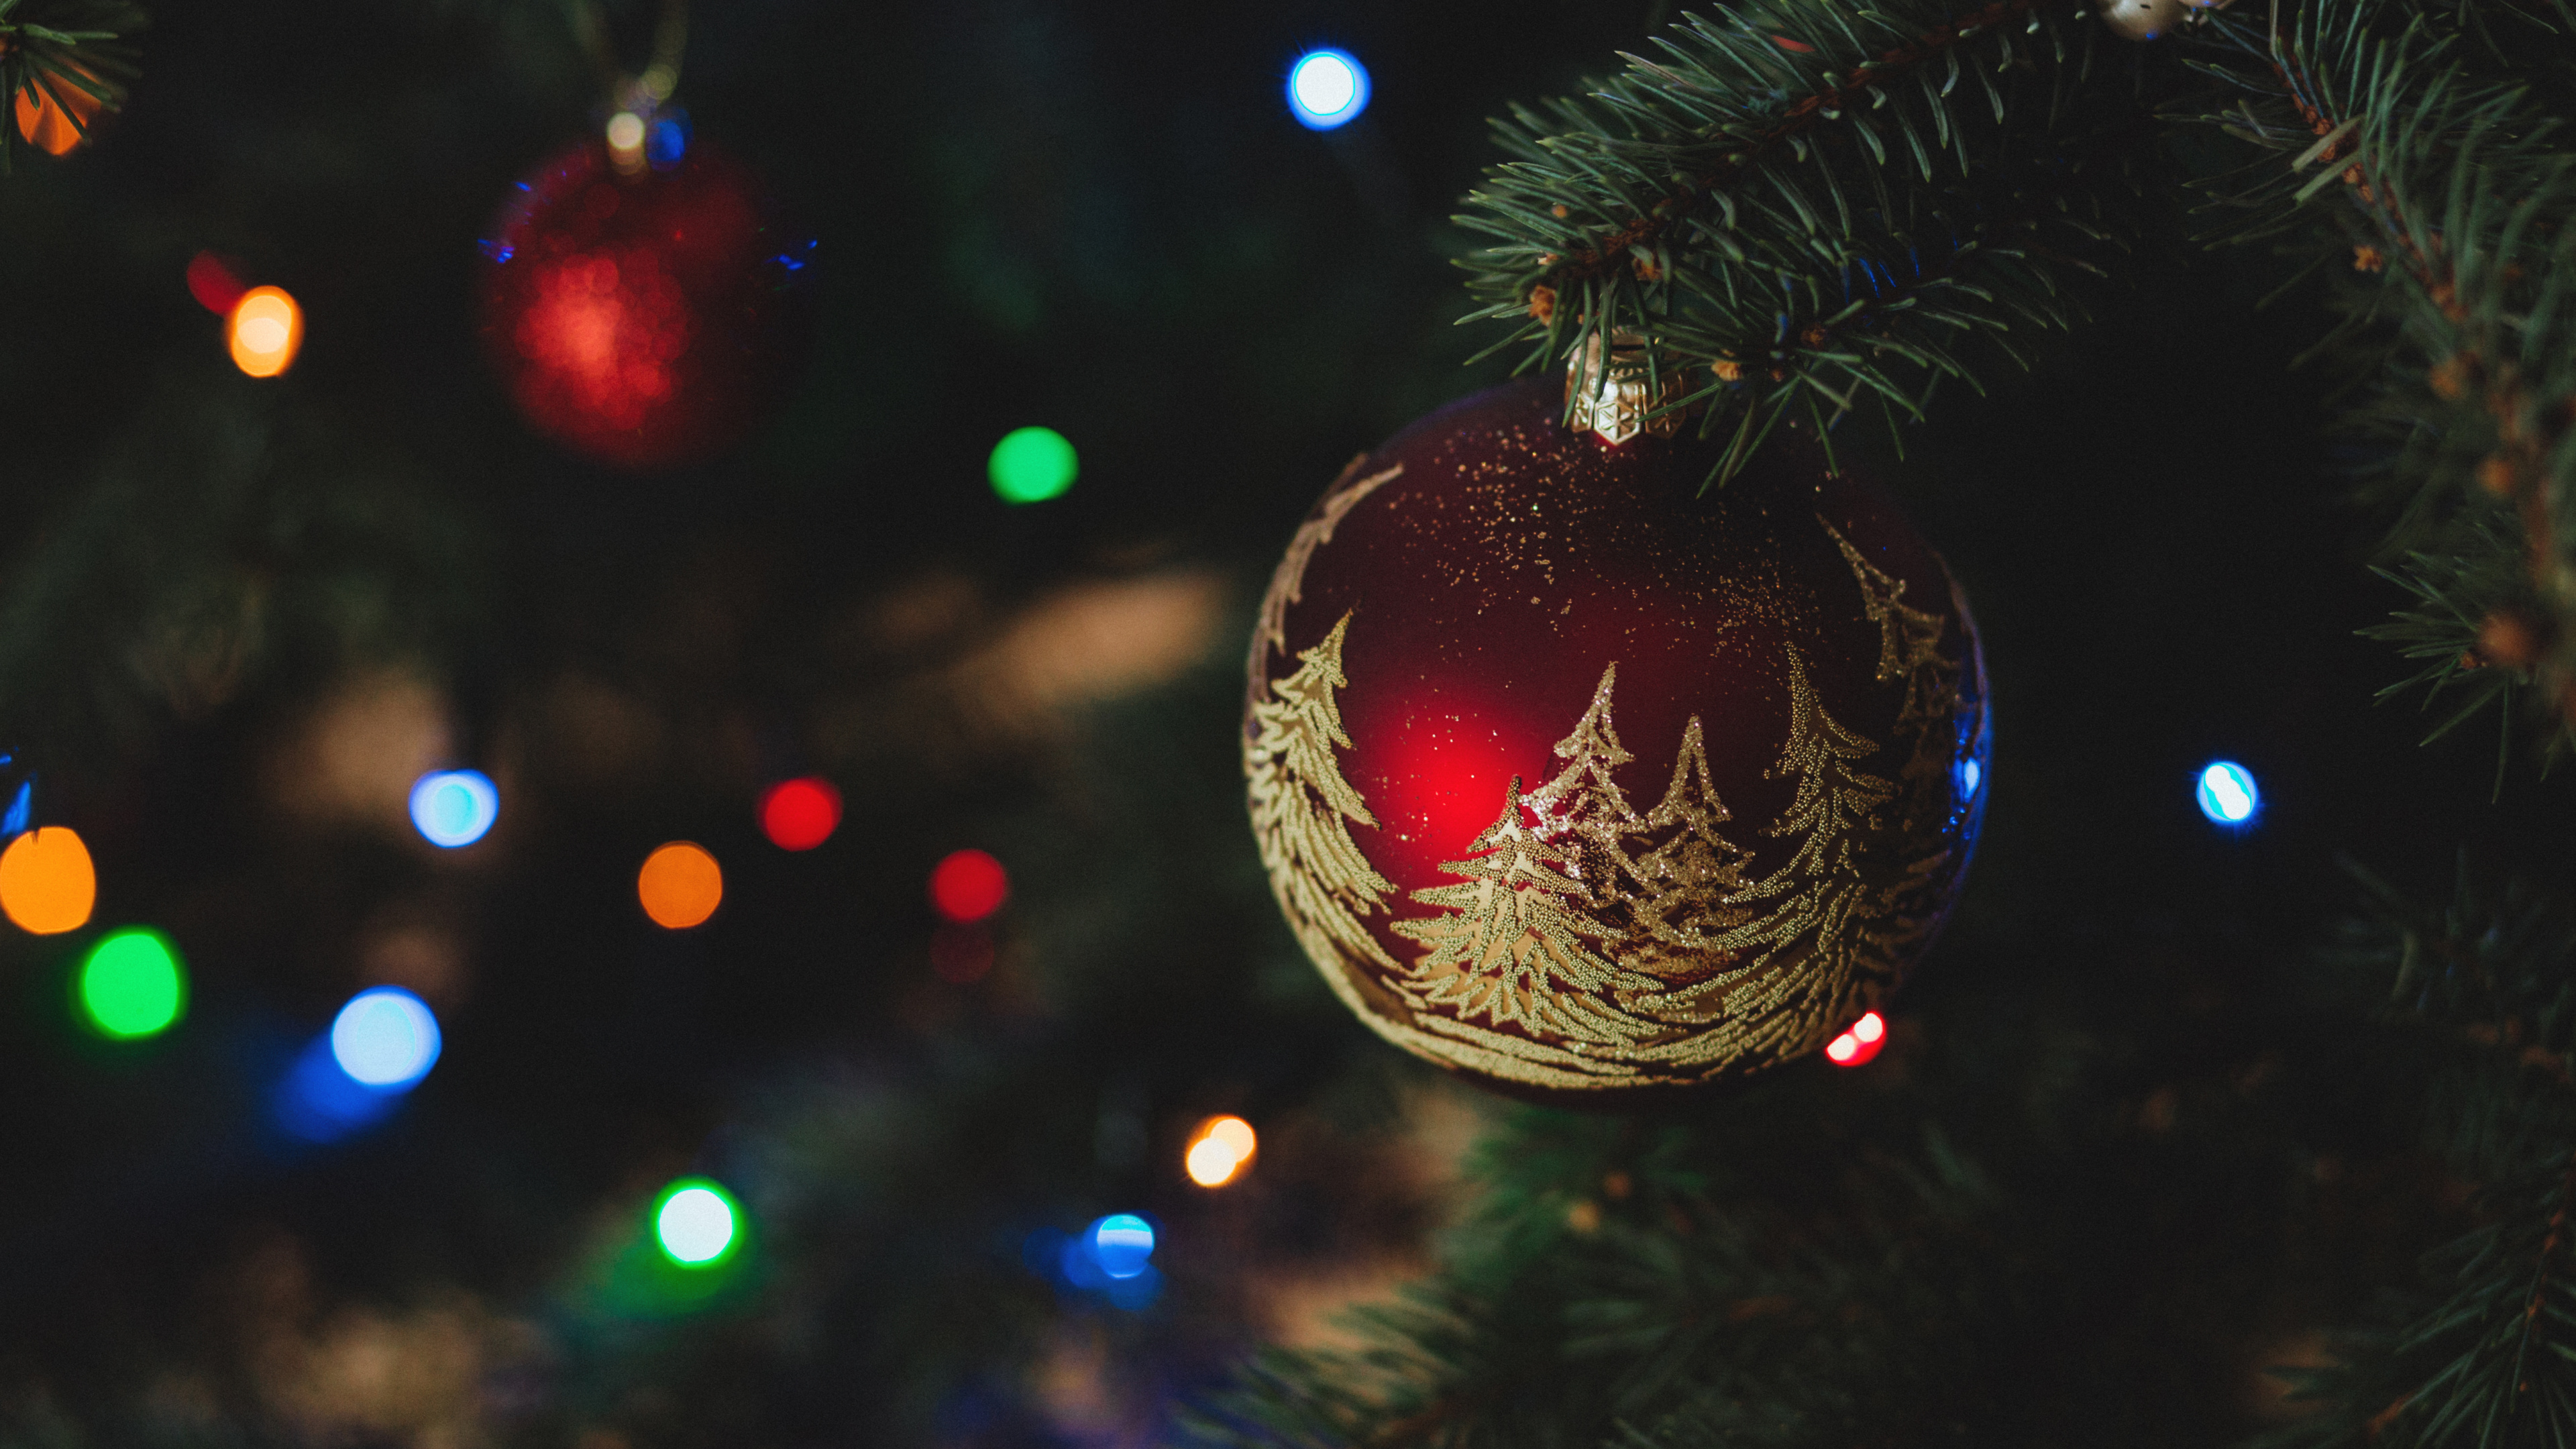 Weihnachten, Weihnachtsdekoration, Christmas Ornament, Weihnachtsbaum, Baum. Wallpaper in 3840x2160 Resolution